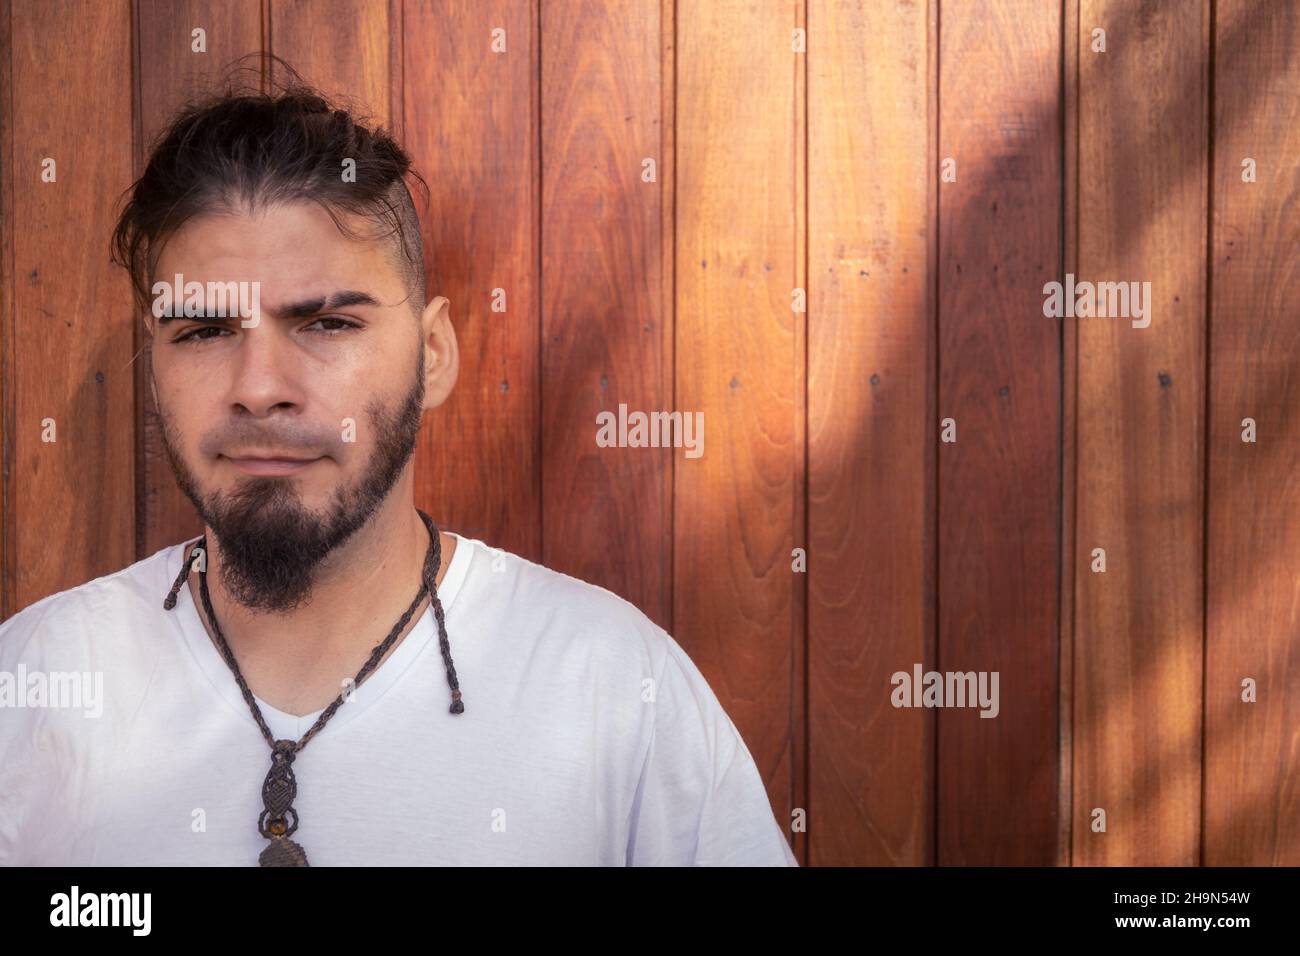 Hombre de 25 a 30 años de raza hispana y aspecto hippie mirando directamente a la cámara con un fondo de madera gastado. Foto de stock